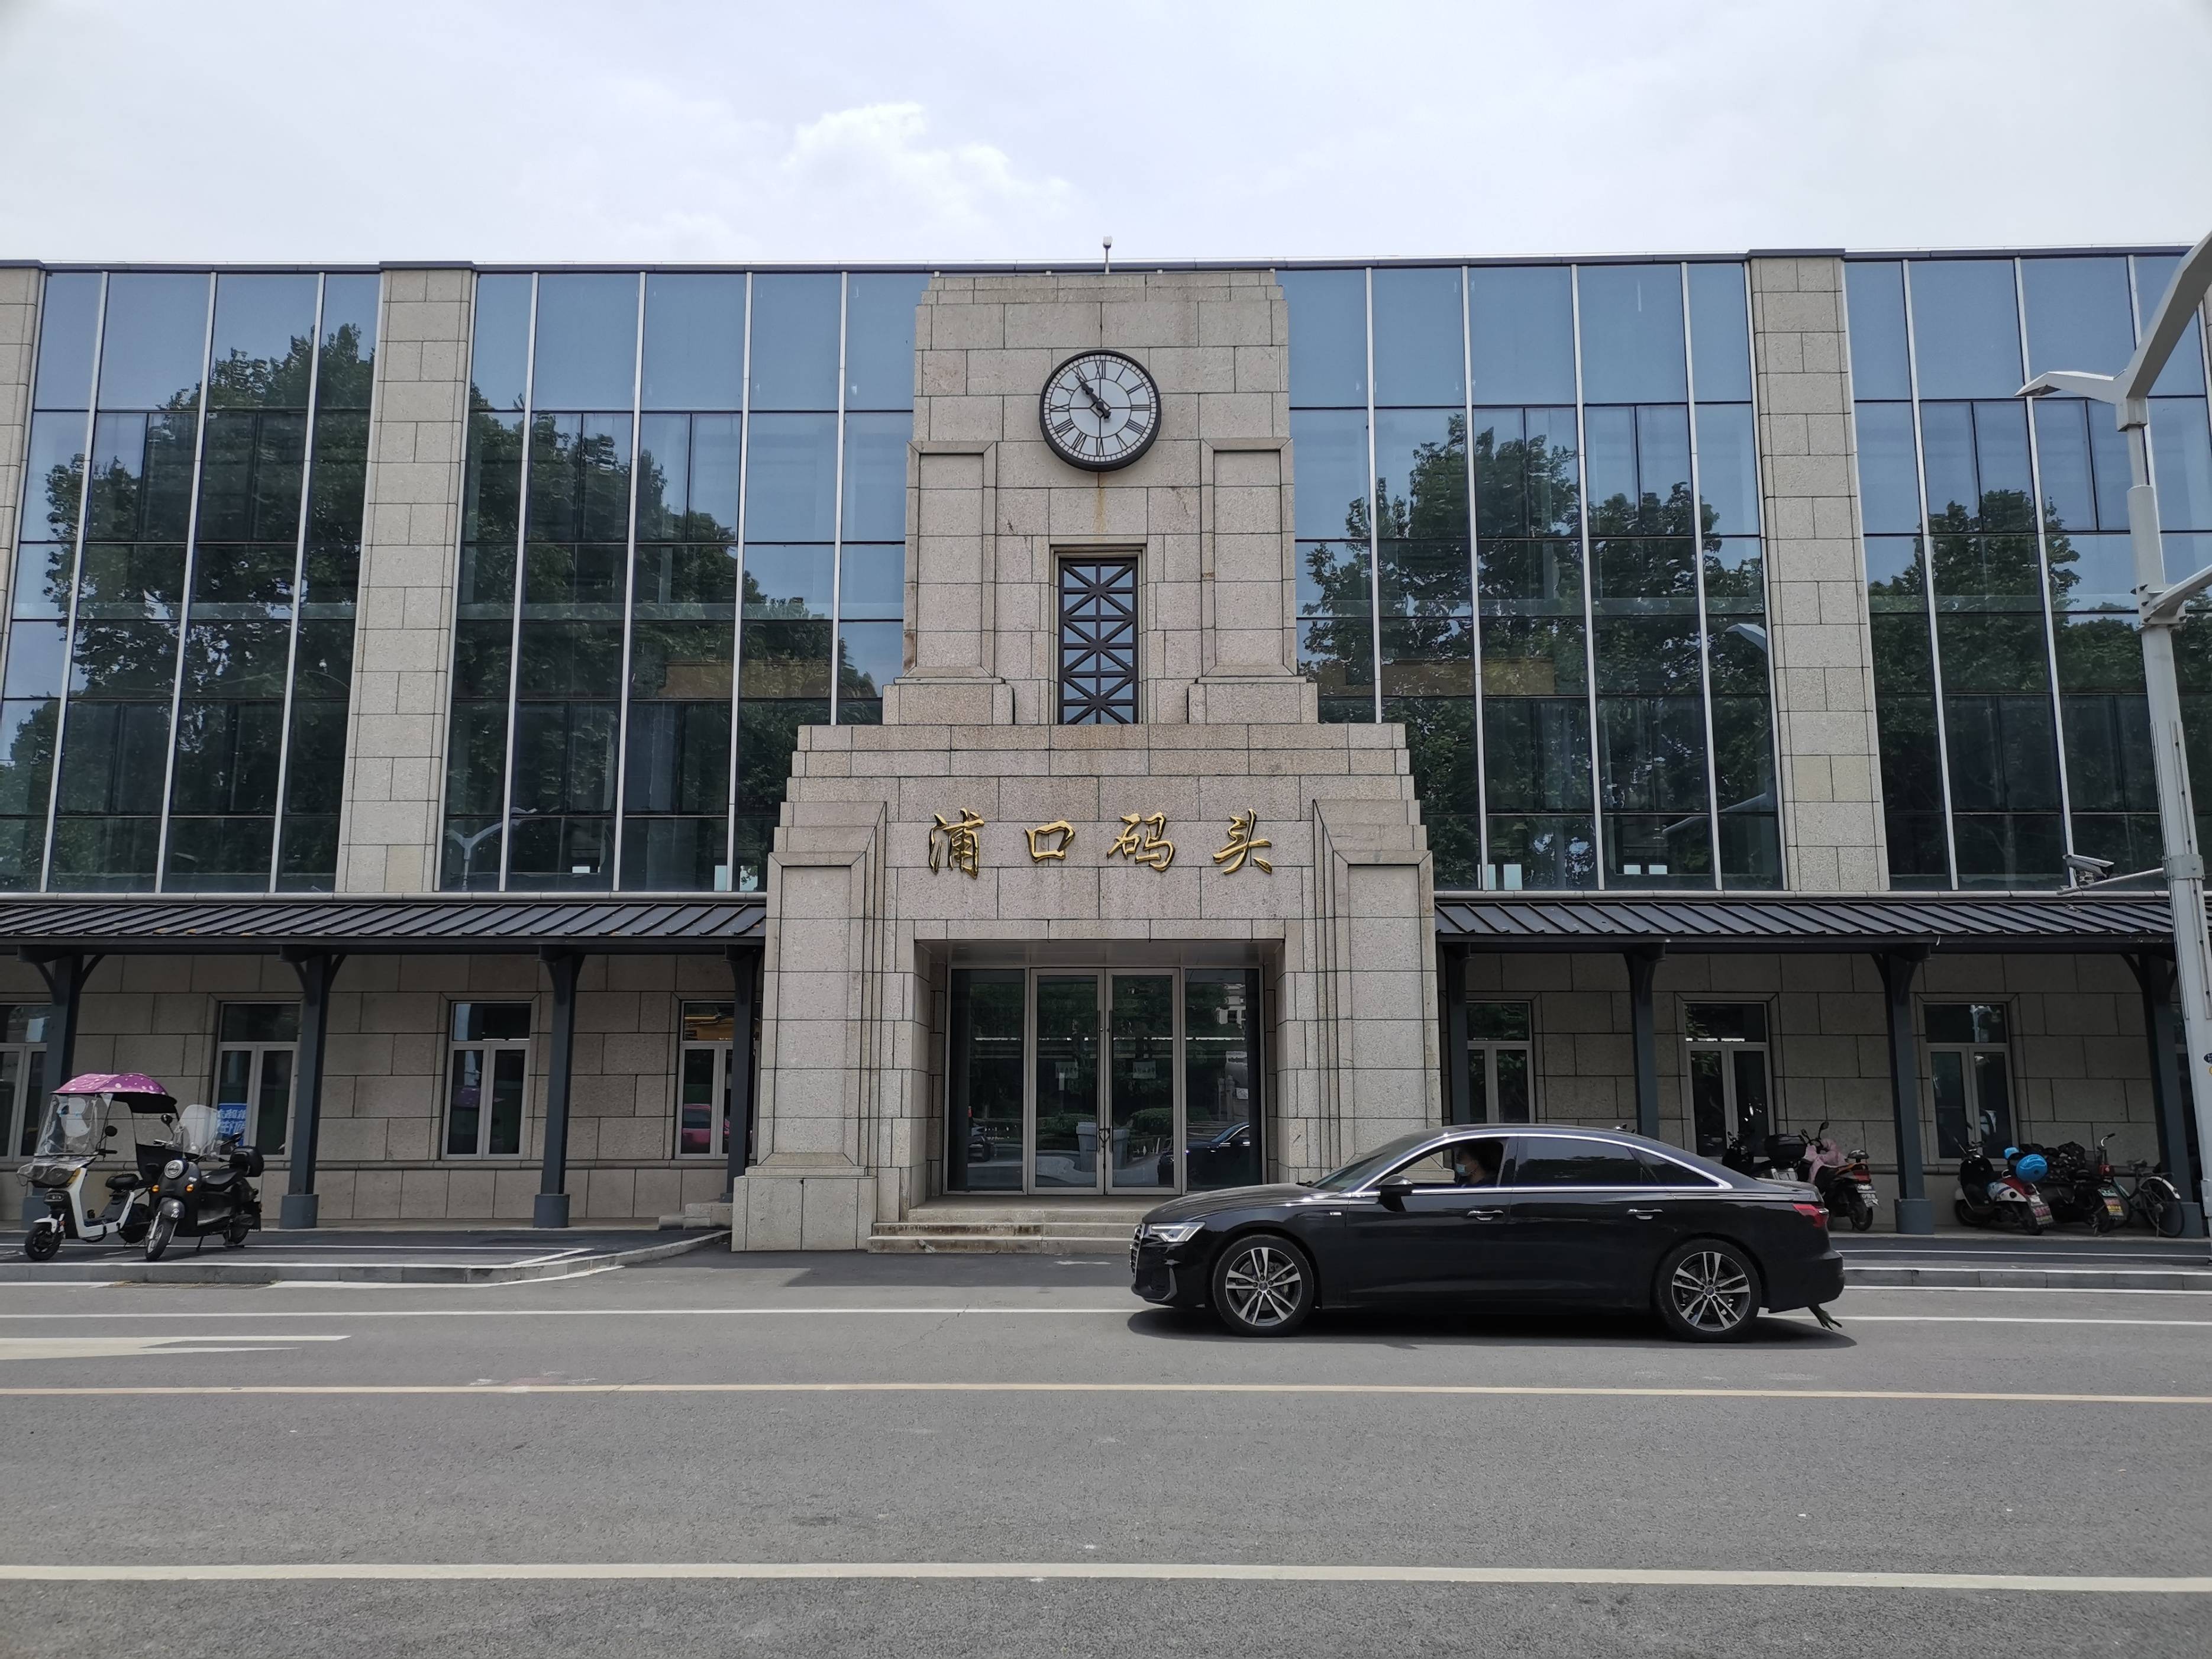 2023浦口火车站旧址游玩攻略,从南京市区去浦口火车站需要...【去哪儿攻略】